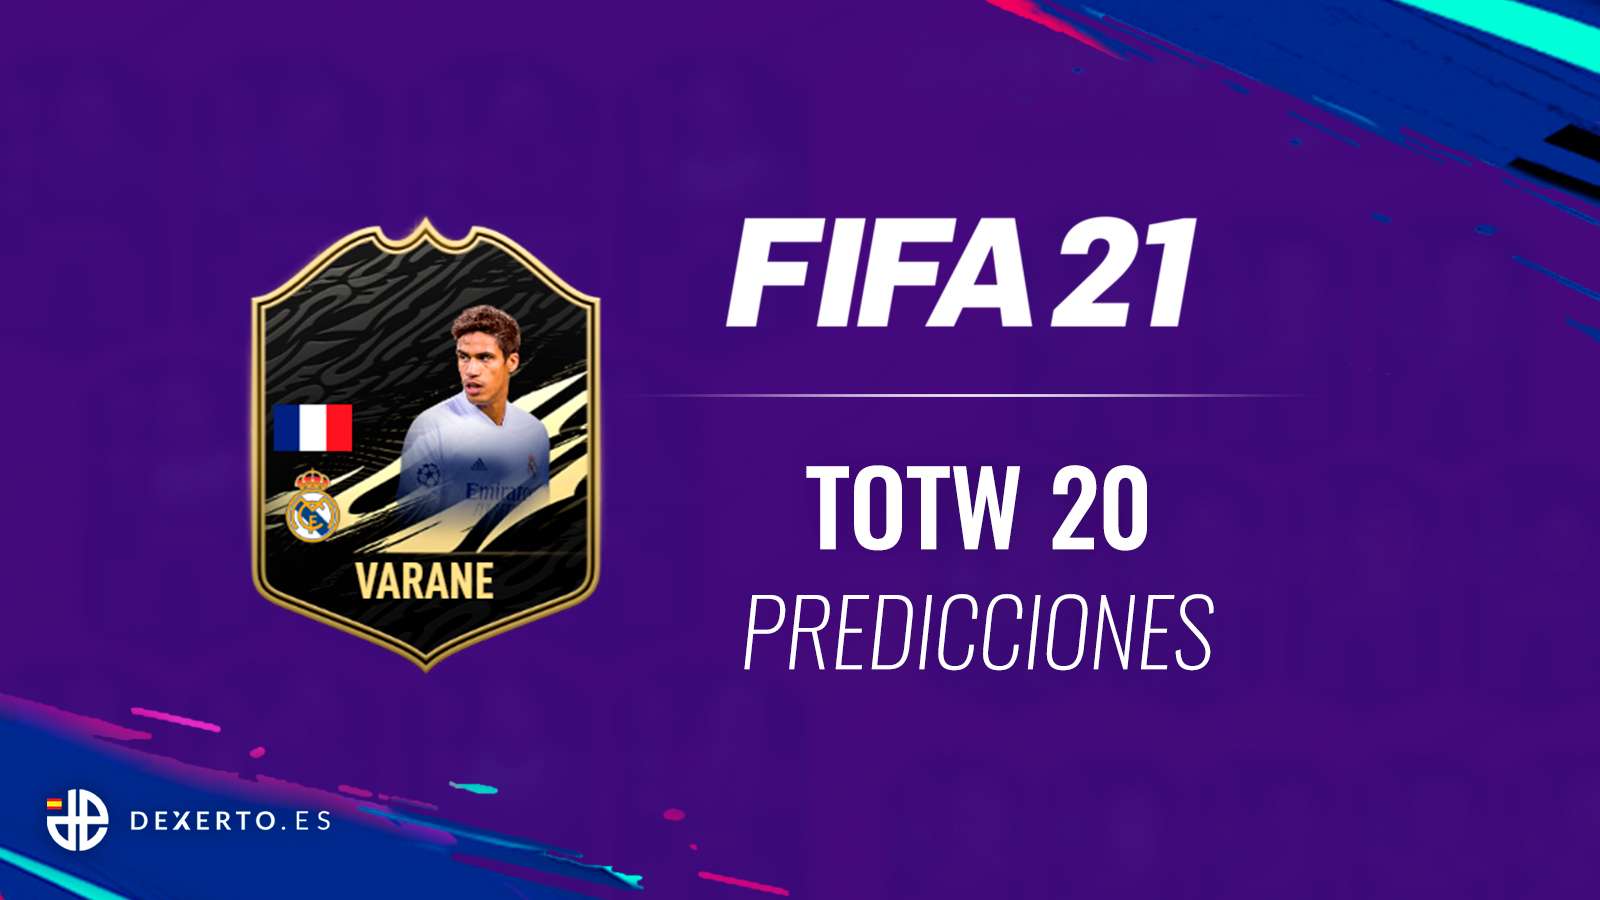 FIFA 21 TOTW 20 predicciones